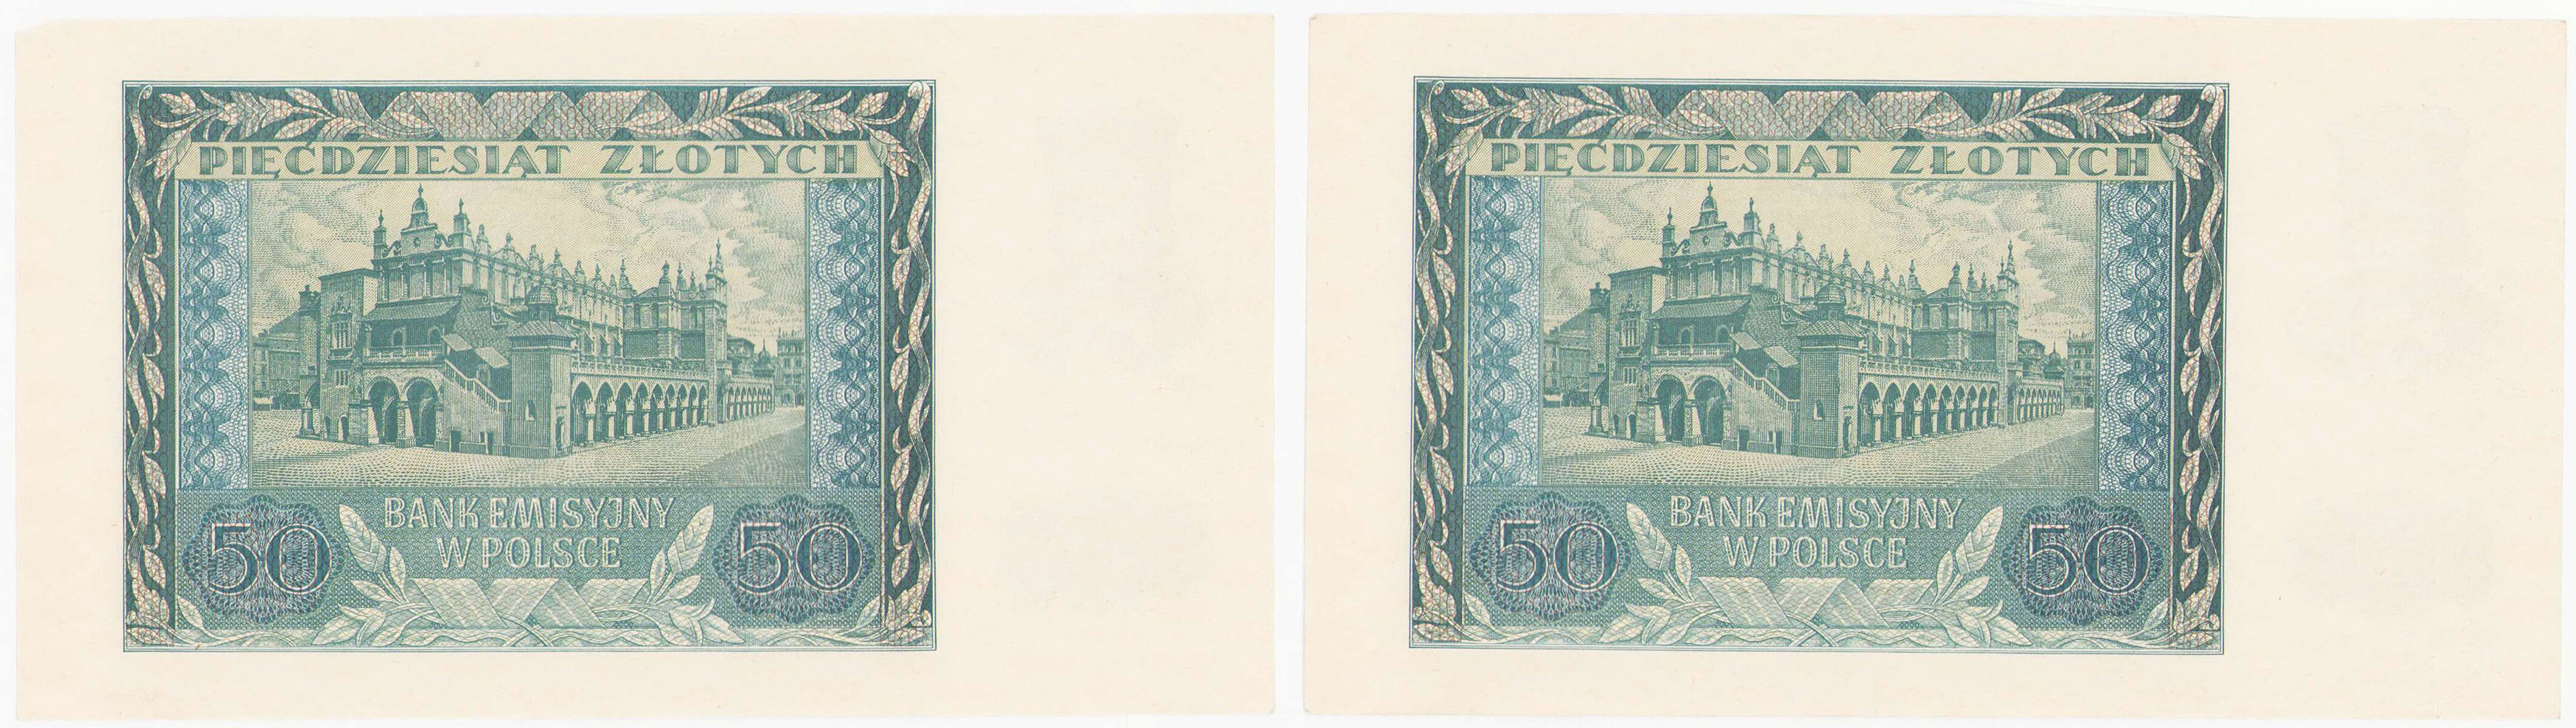 50 złotych 1941 seria D, zestaw 2 banknotów